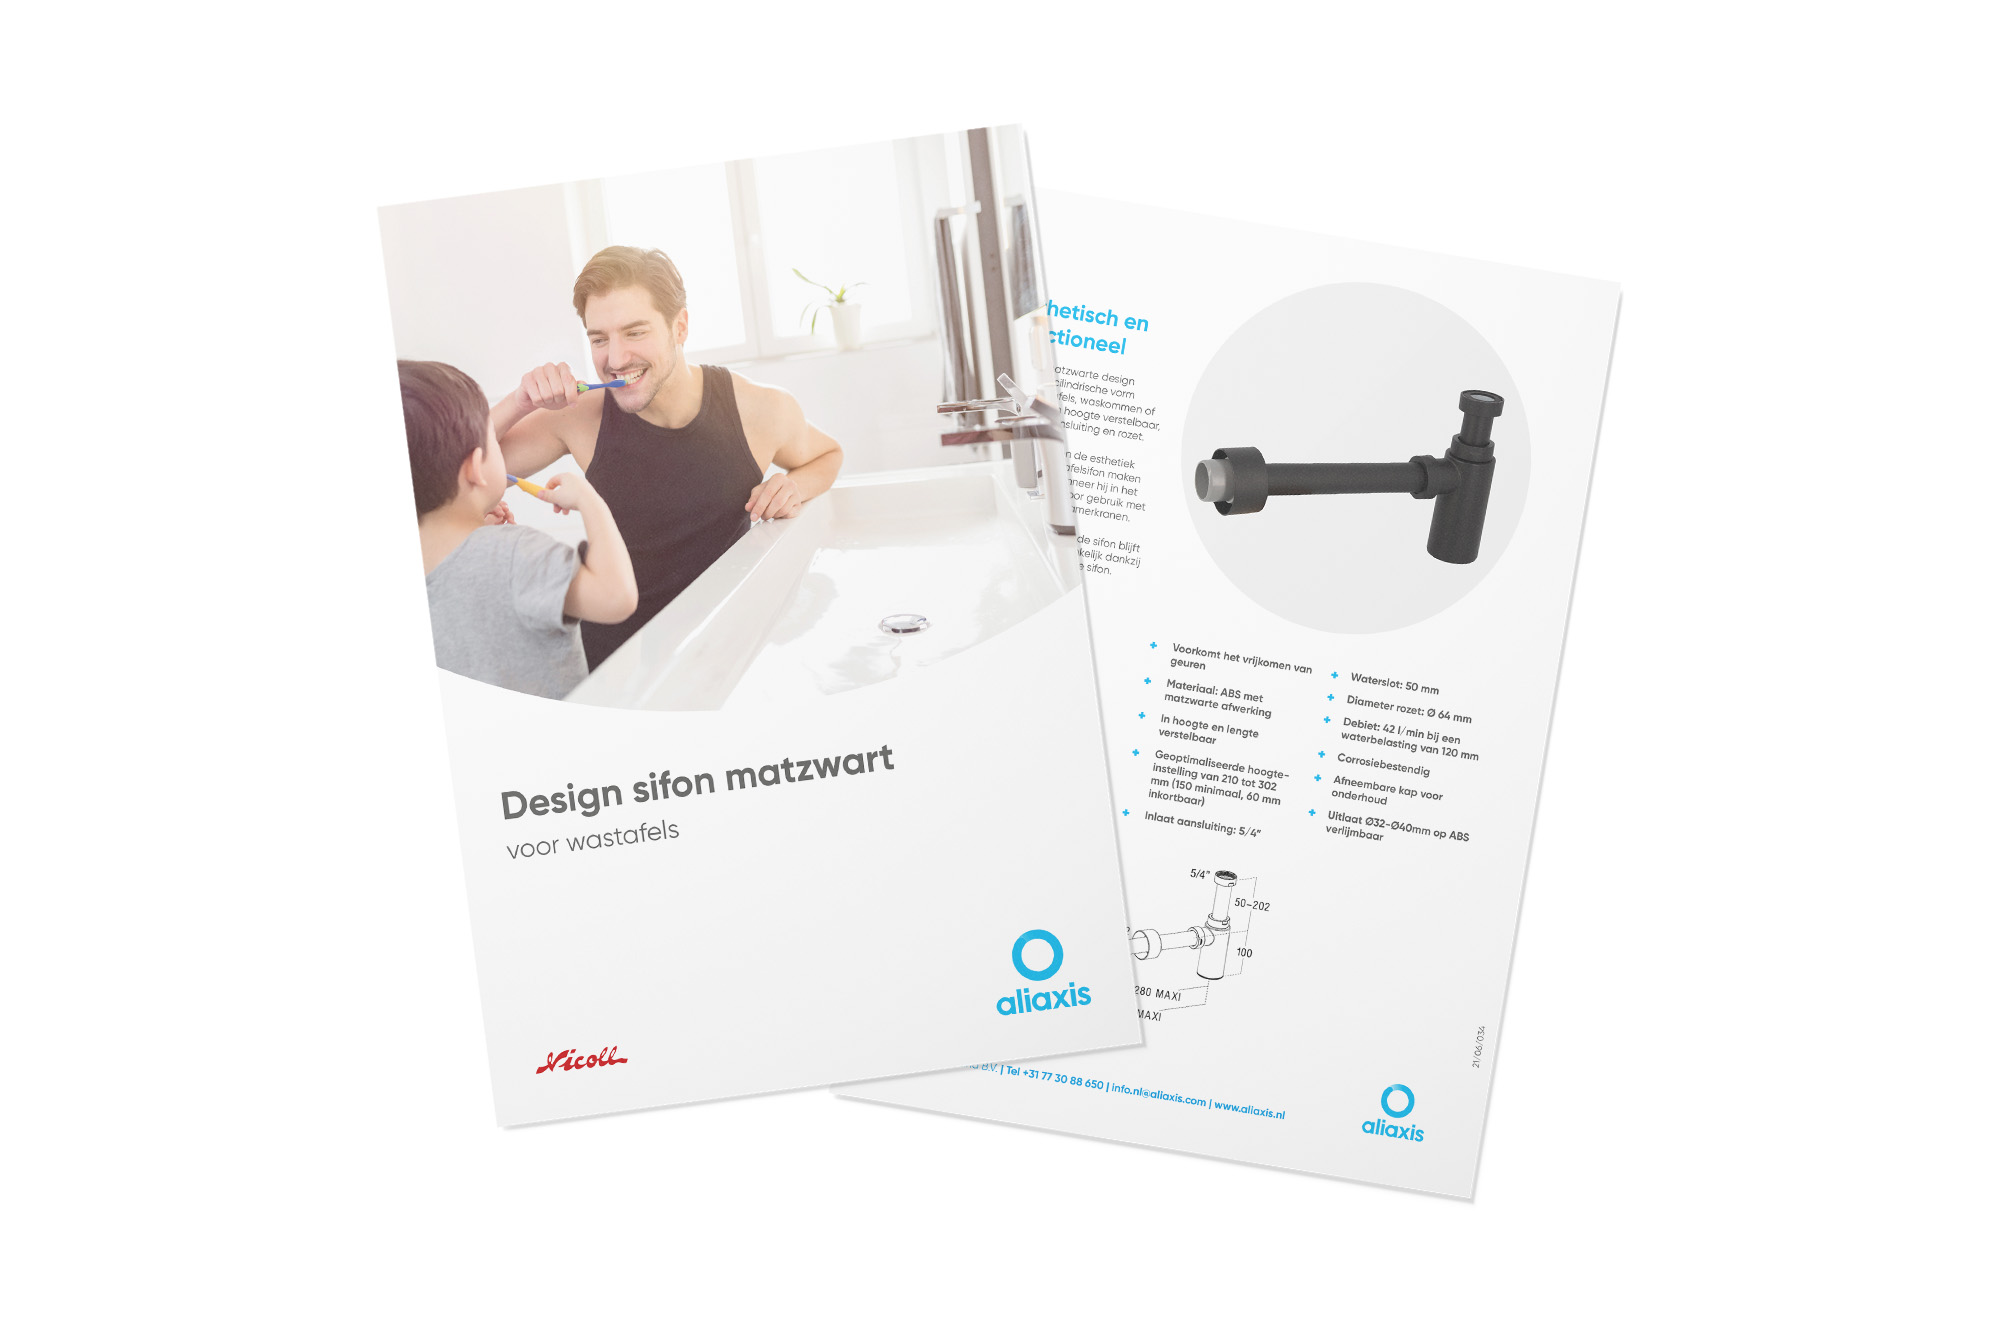 Jimten - Design sifon matzwart leaflet